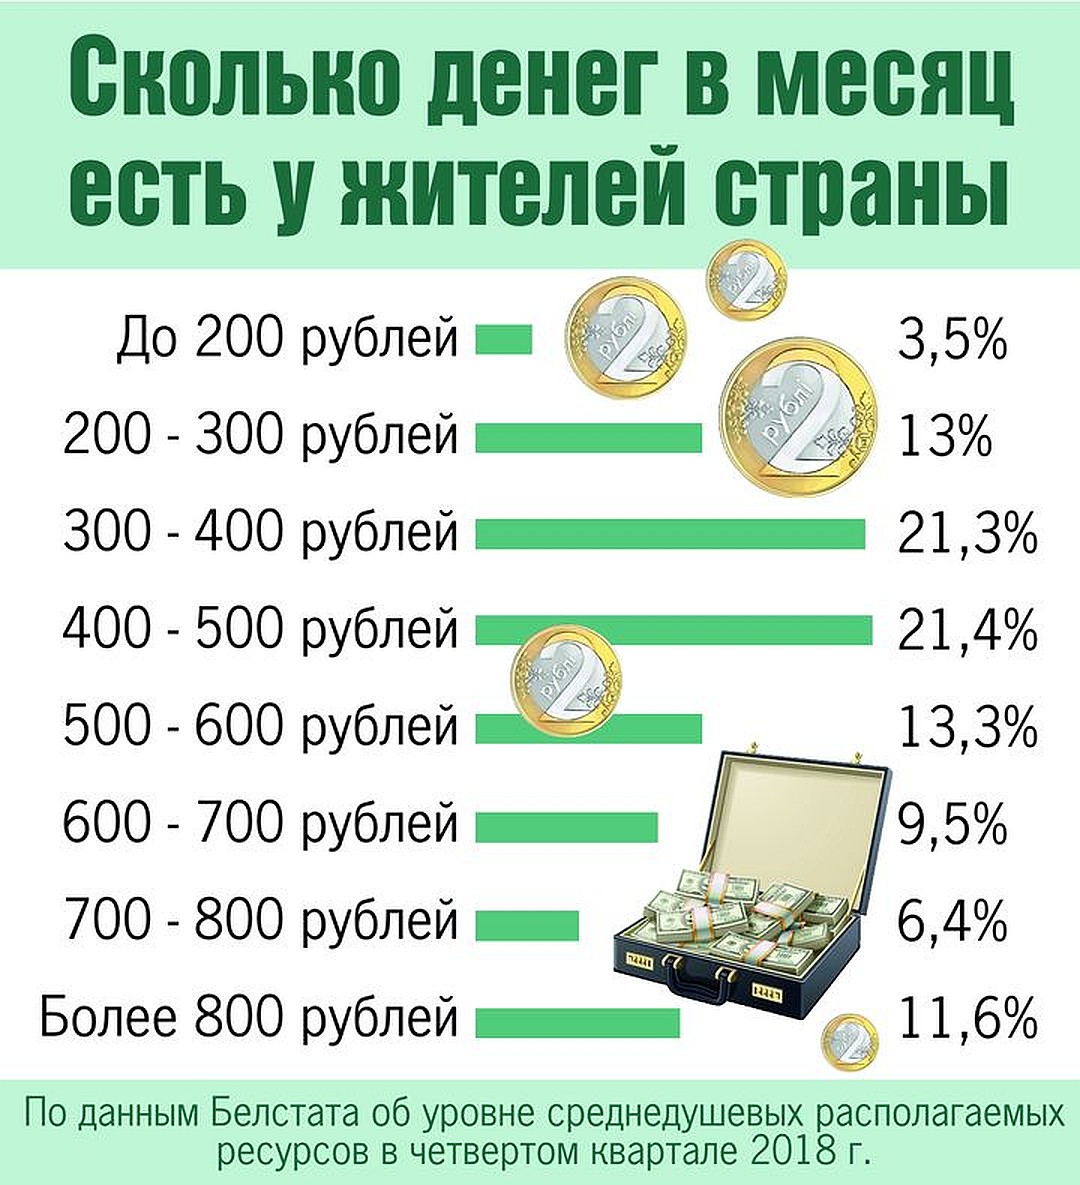 Сколько в белорусских рублях 600 российских рублей. Сколько денег. Рублей в месяц. Сколько денег в месяц. Зарплата 300 рублей.